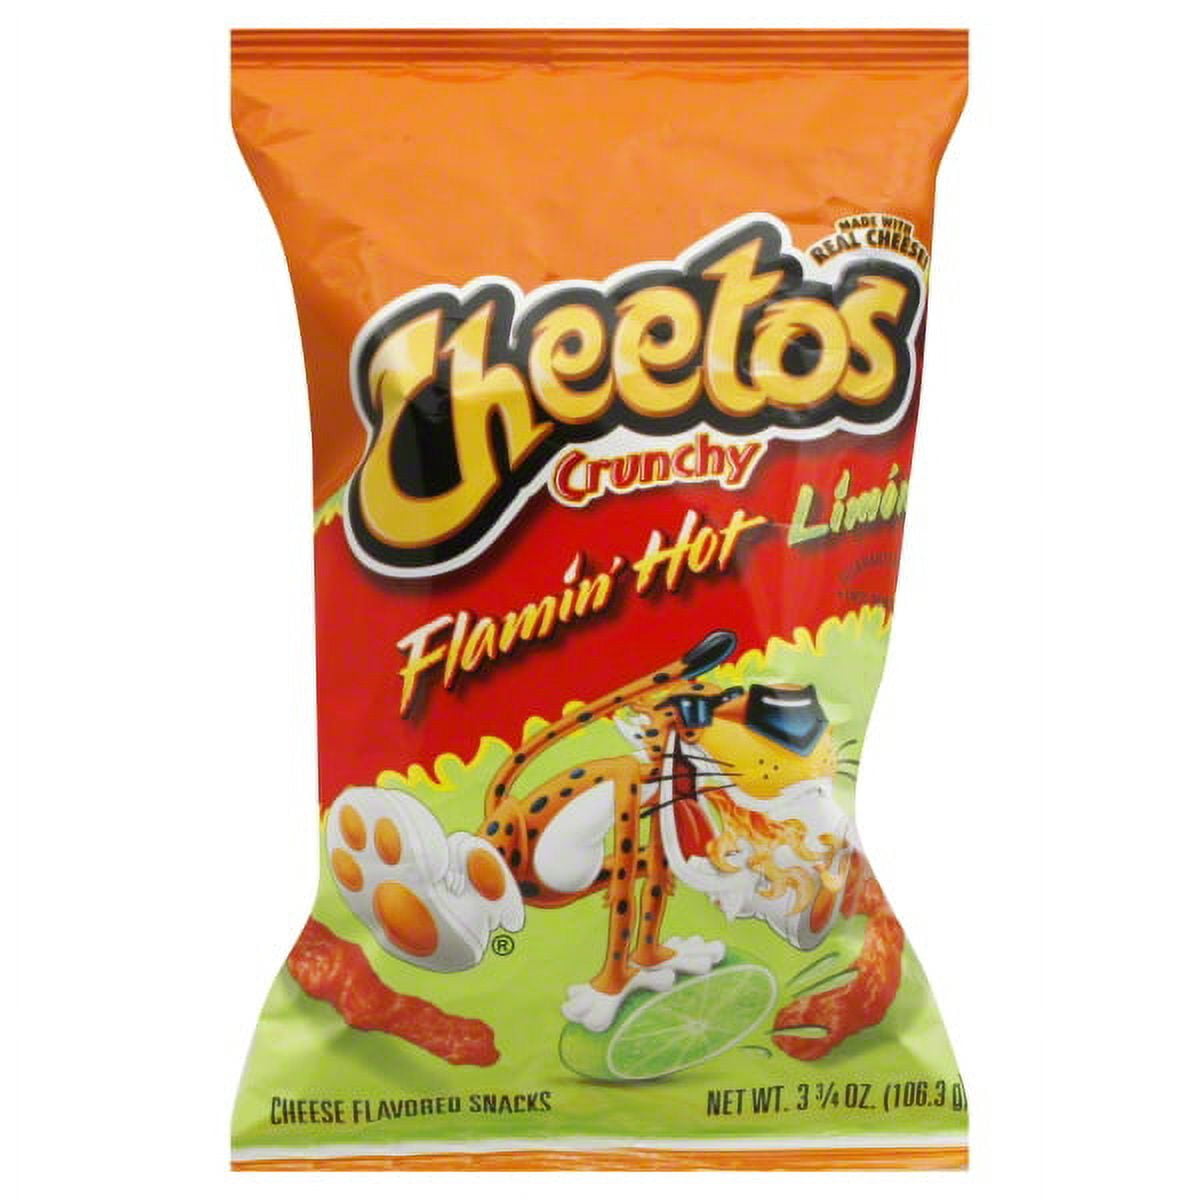 Cheetos Crunchy Flamin' Hot 8.5oz – BevMo!